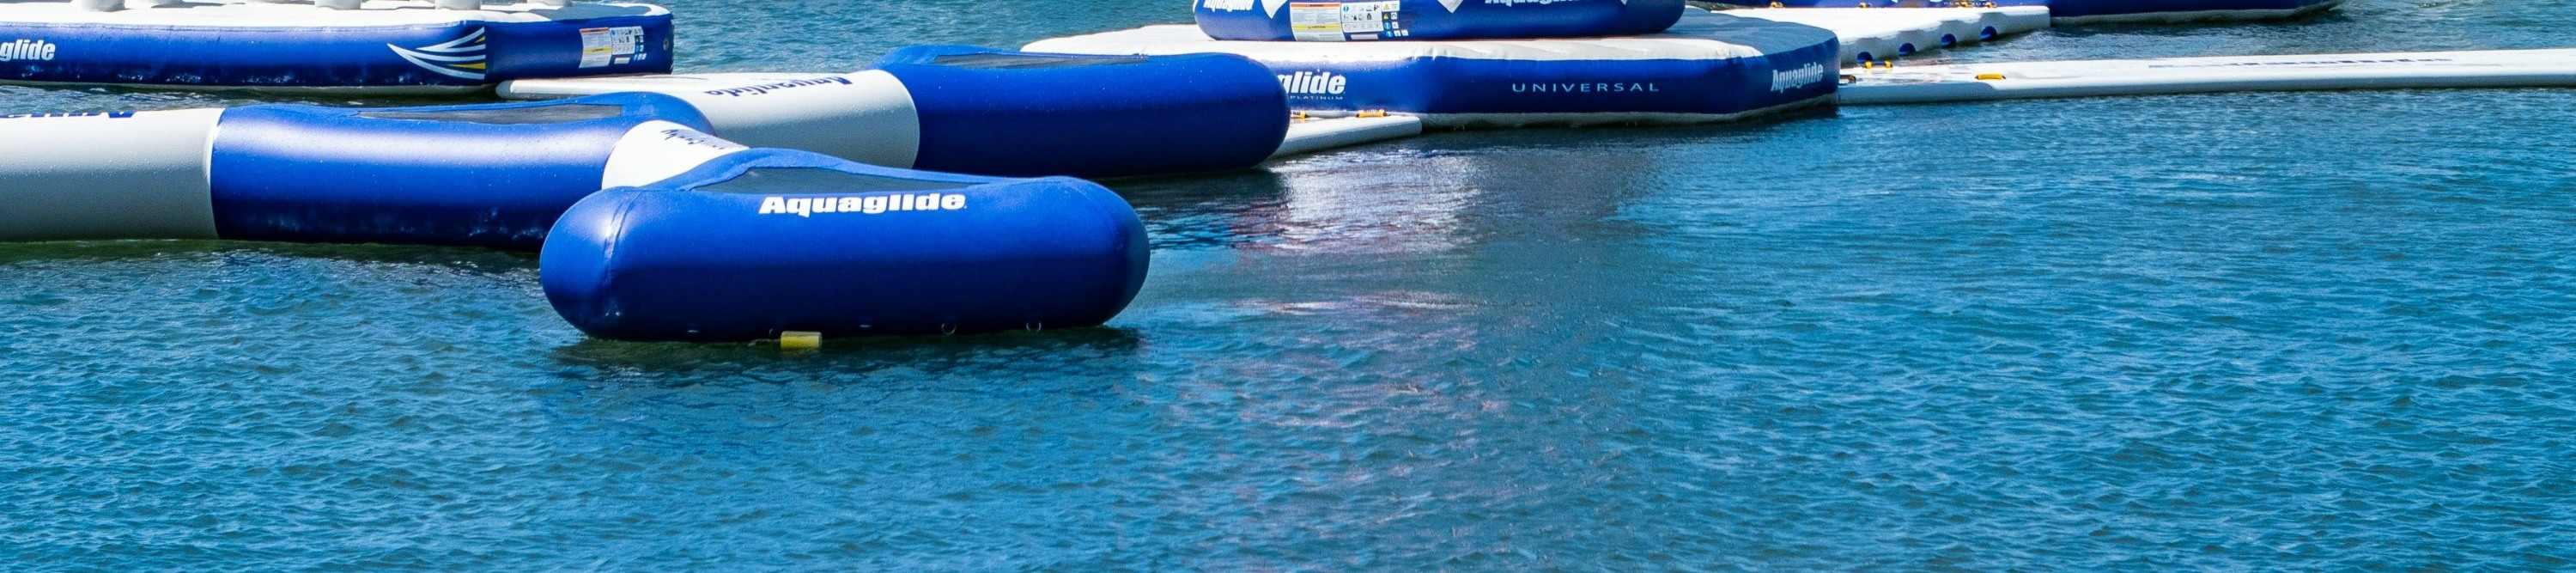 黃金海岸Aqua Park水上樂園一般門票